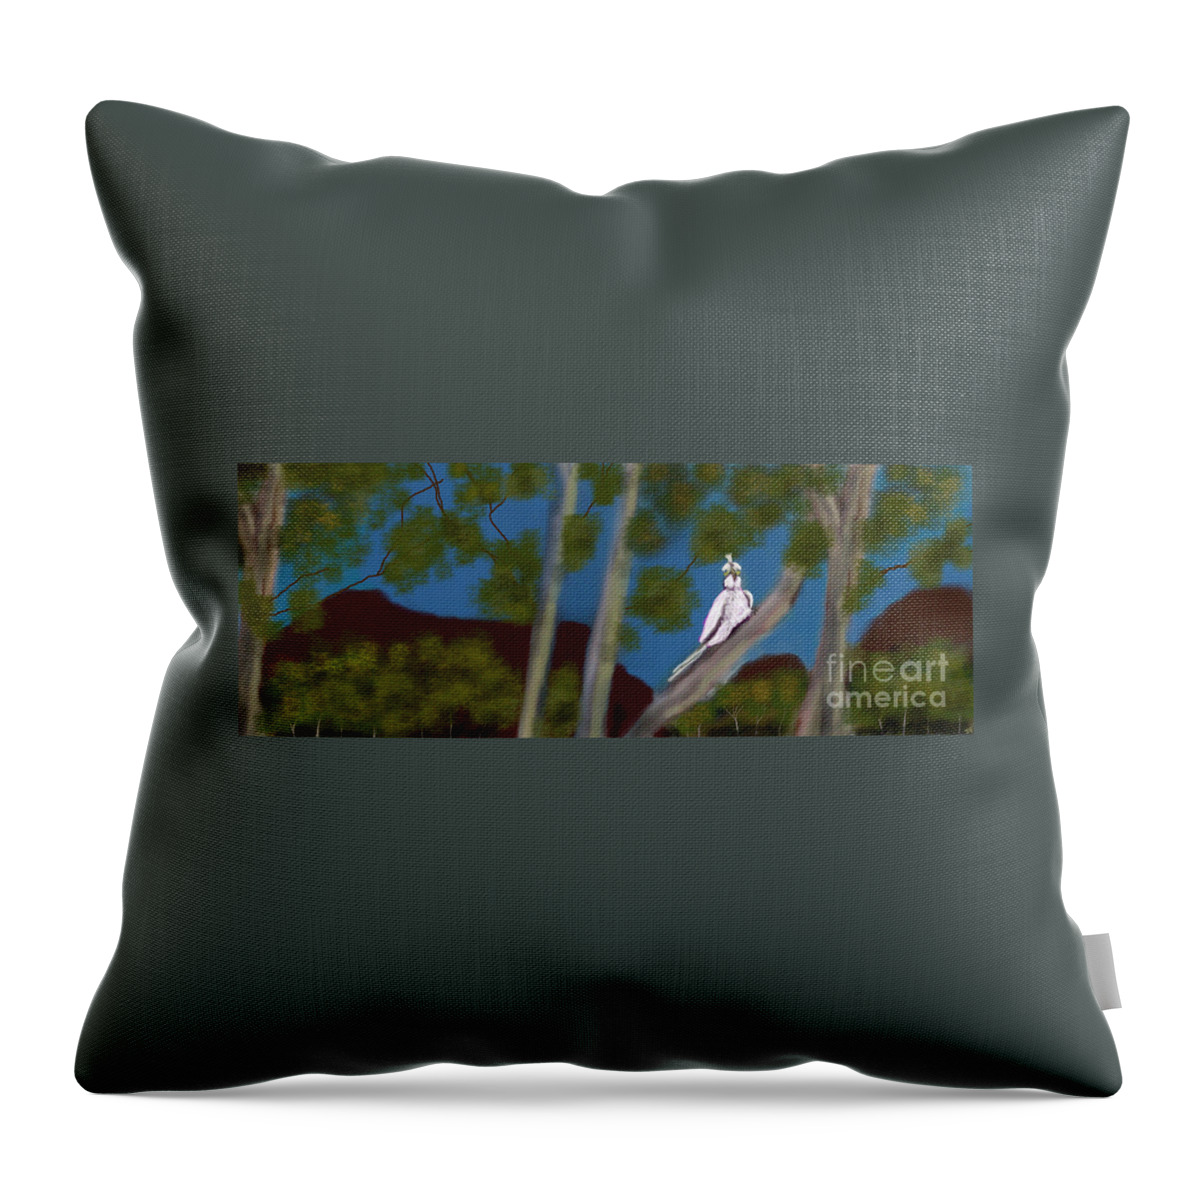 Aussie Throw Pillow featuring the digital art Great Aussie Bush Bird name Eddie by Julie Grimshaw